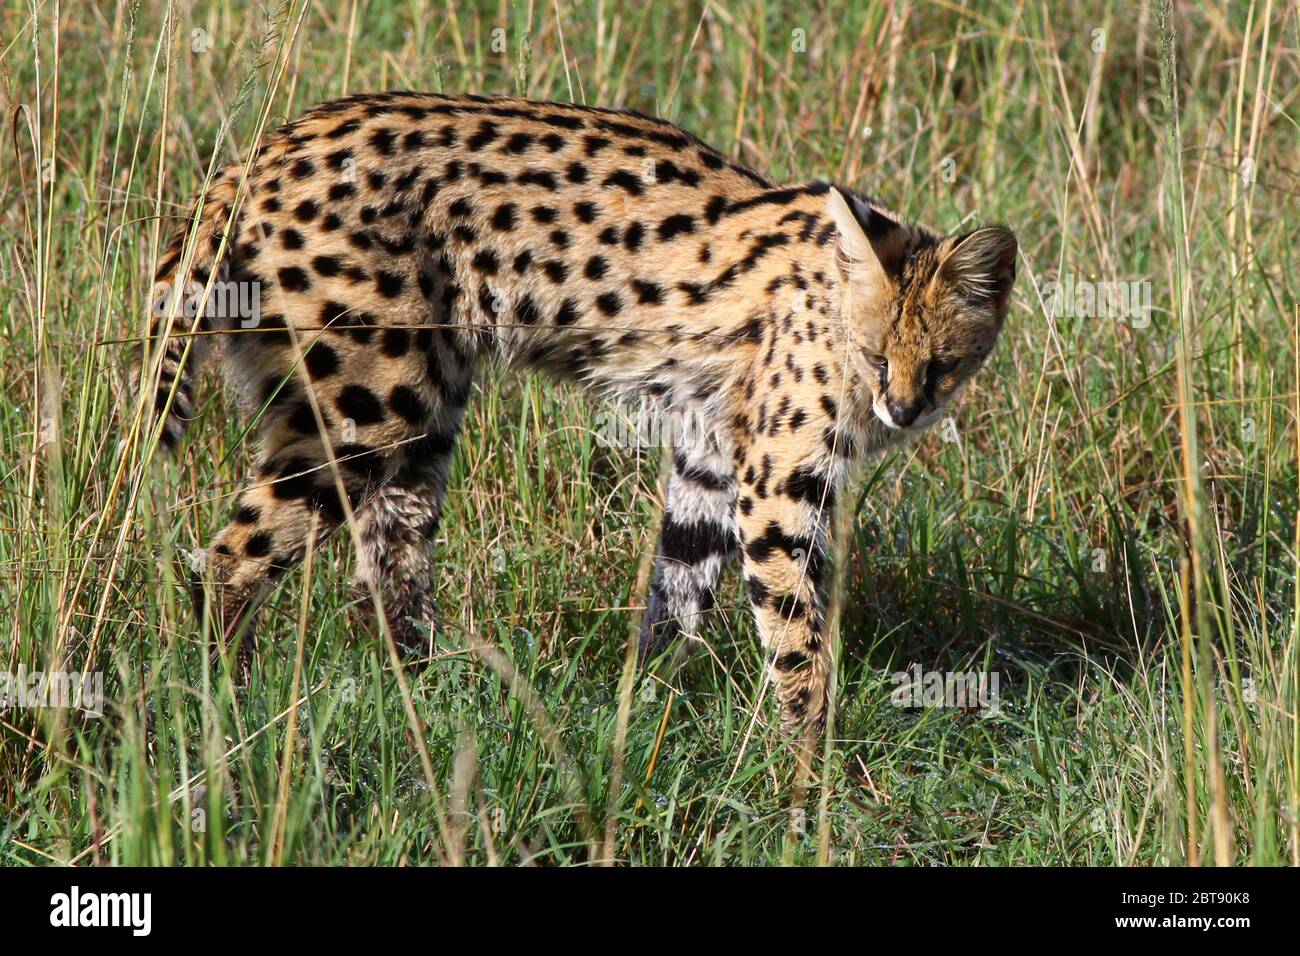 un petit chat sauvage tacheté, le serval, se faufile dans la grande herbe de la savane et recherche des proies Banque D'Images